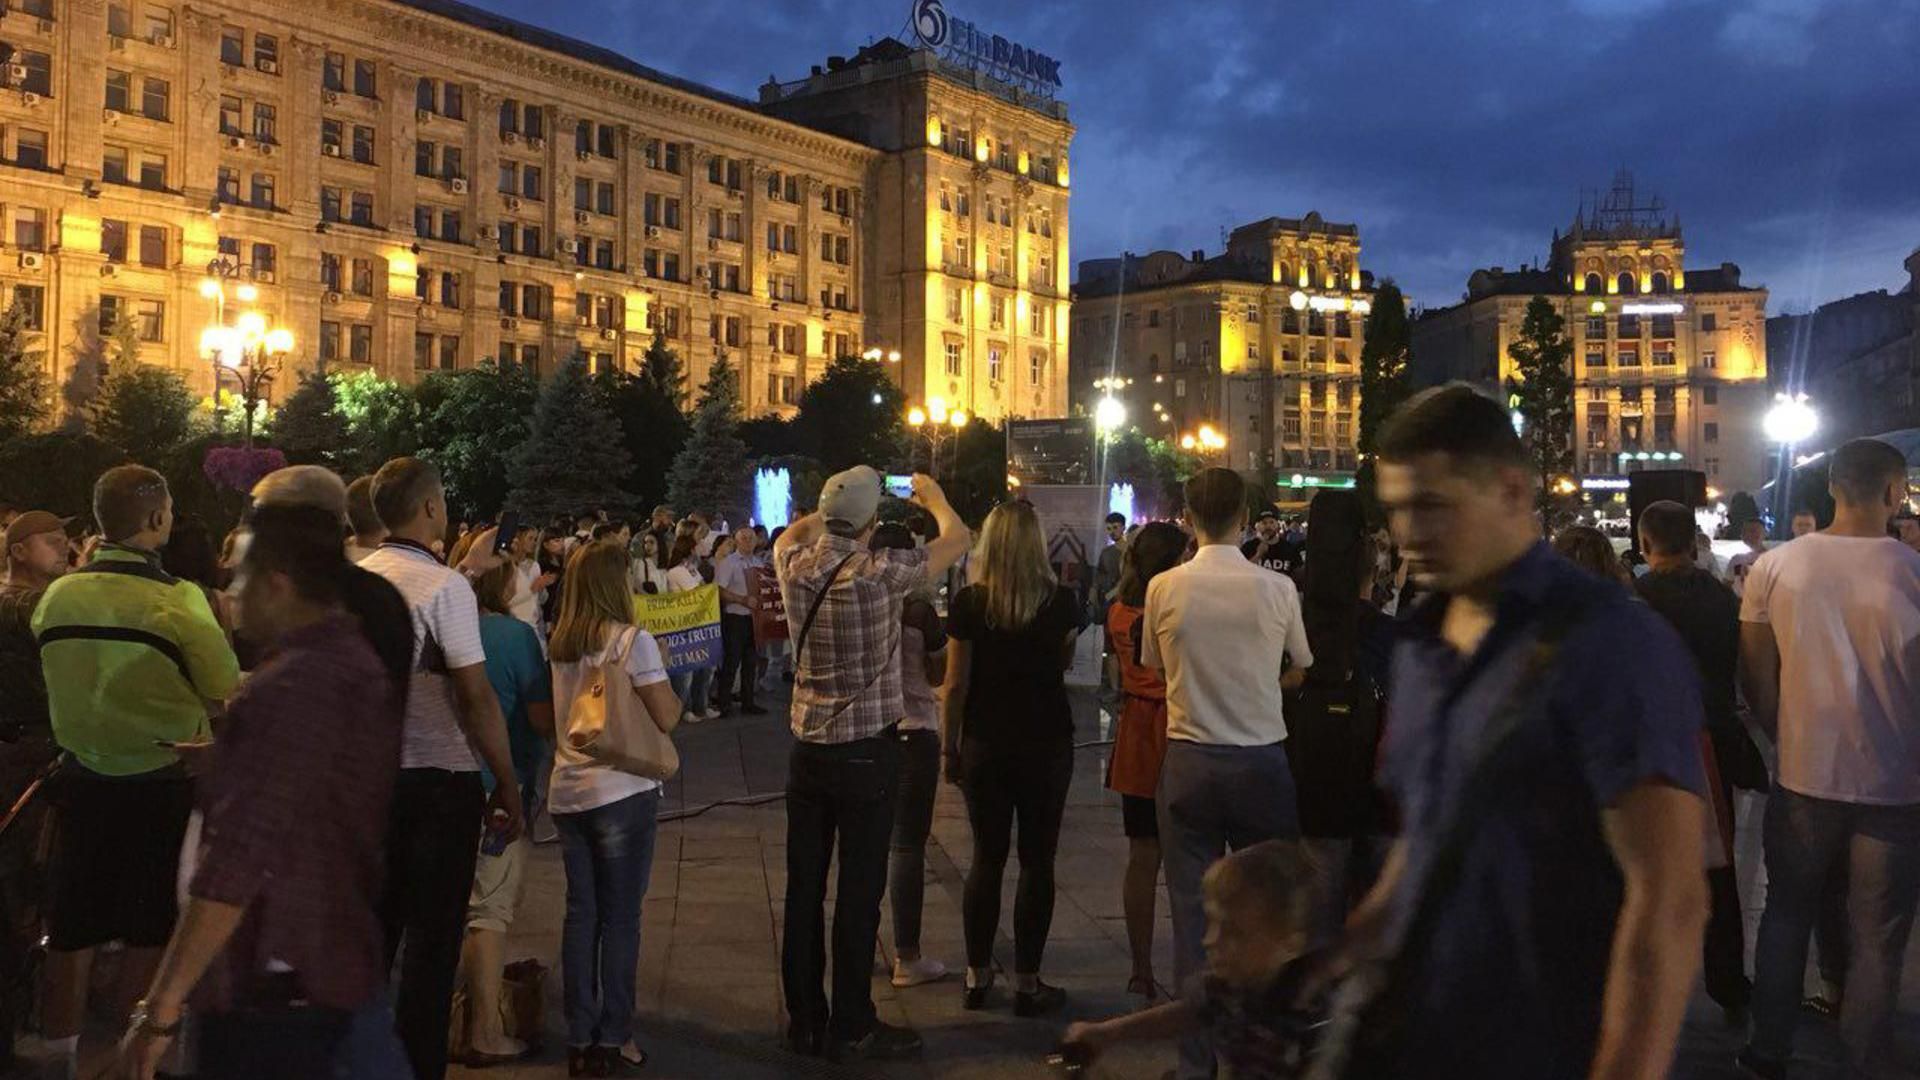 Действия консерваторов, полиция окружила центр: чем живет Киев за считанные часы до "КиевПрайда"